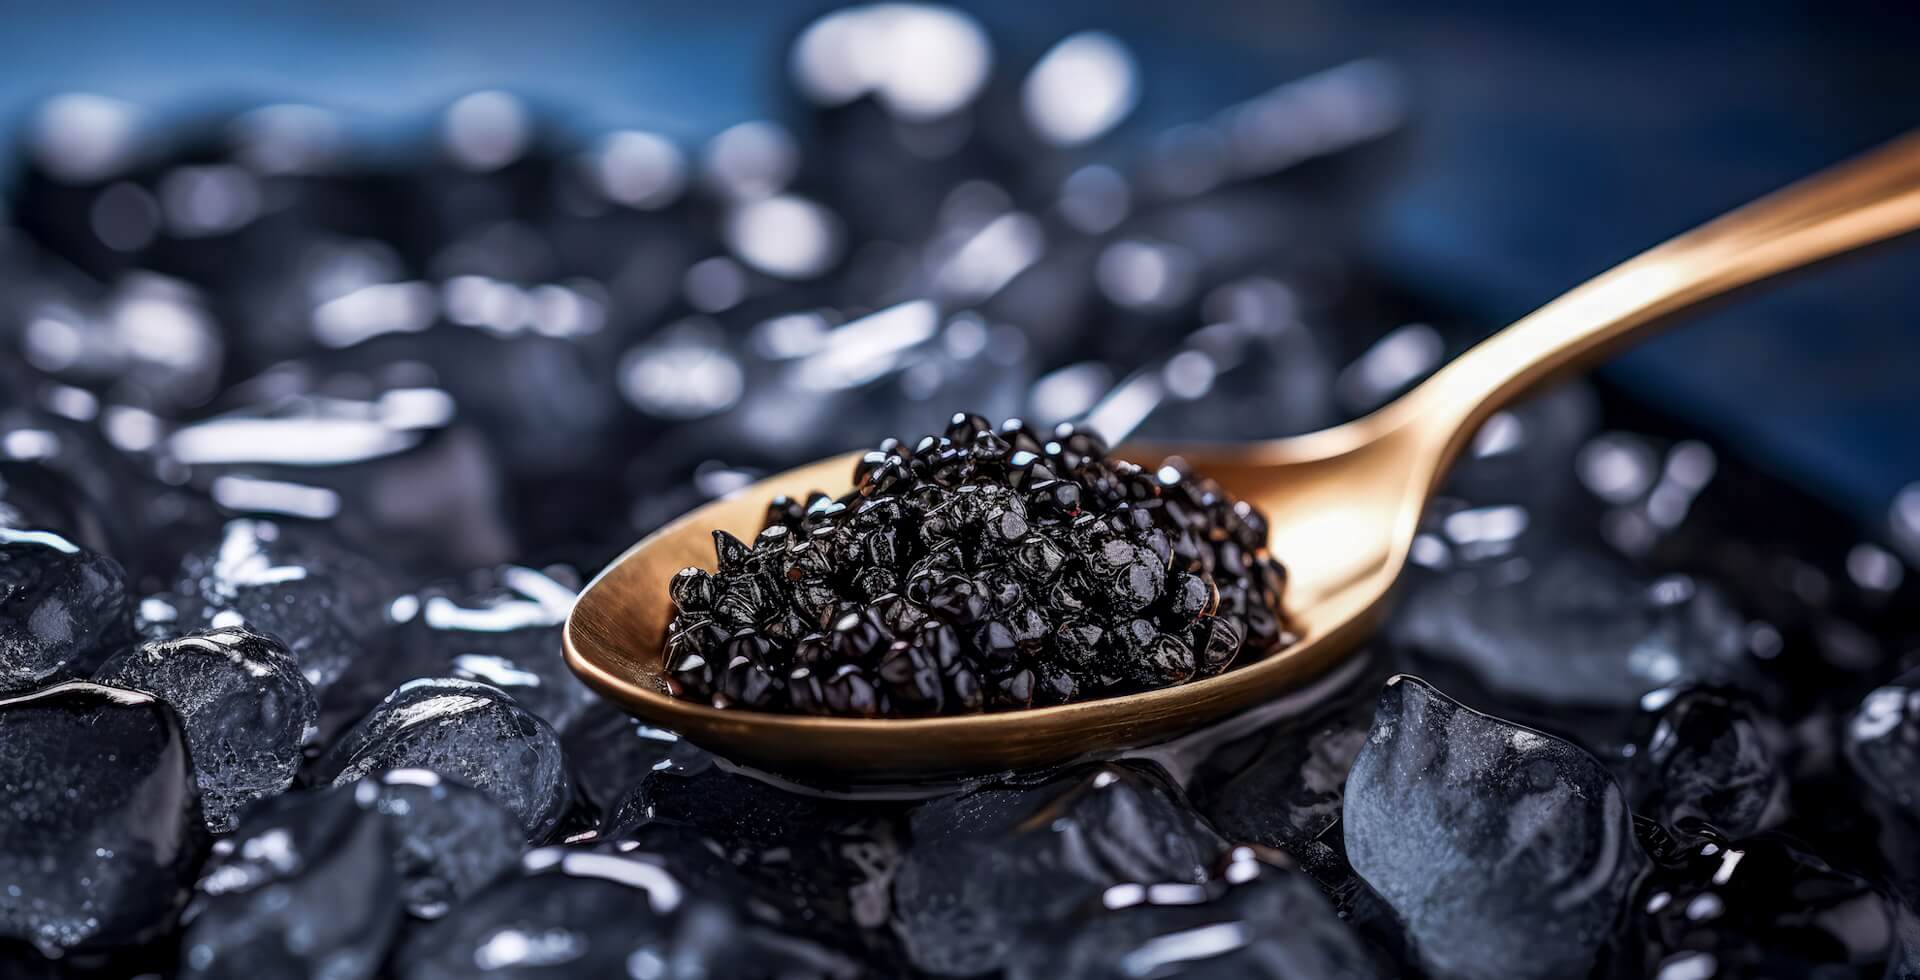 Schwarzer Kaviar auf goldenem Löffel, platziert auf schwarzen Steinen.